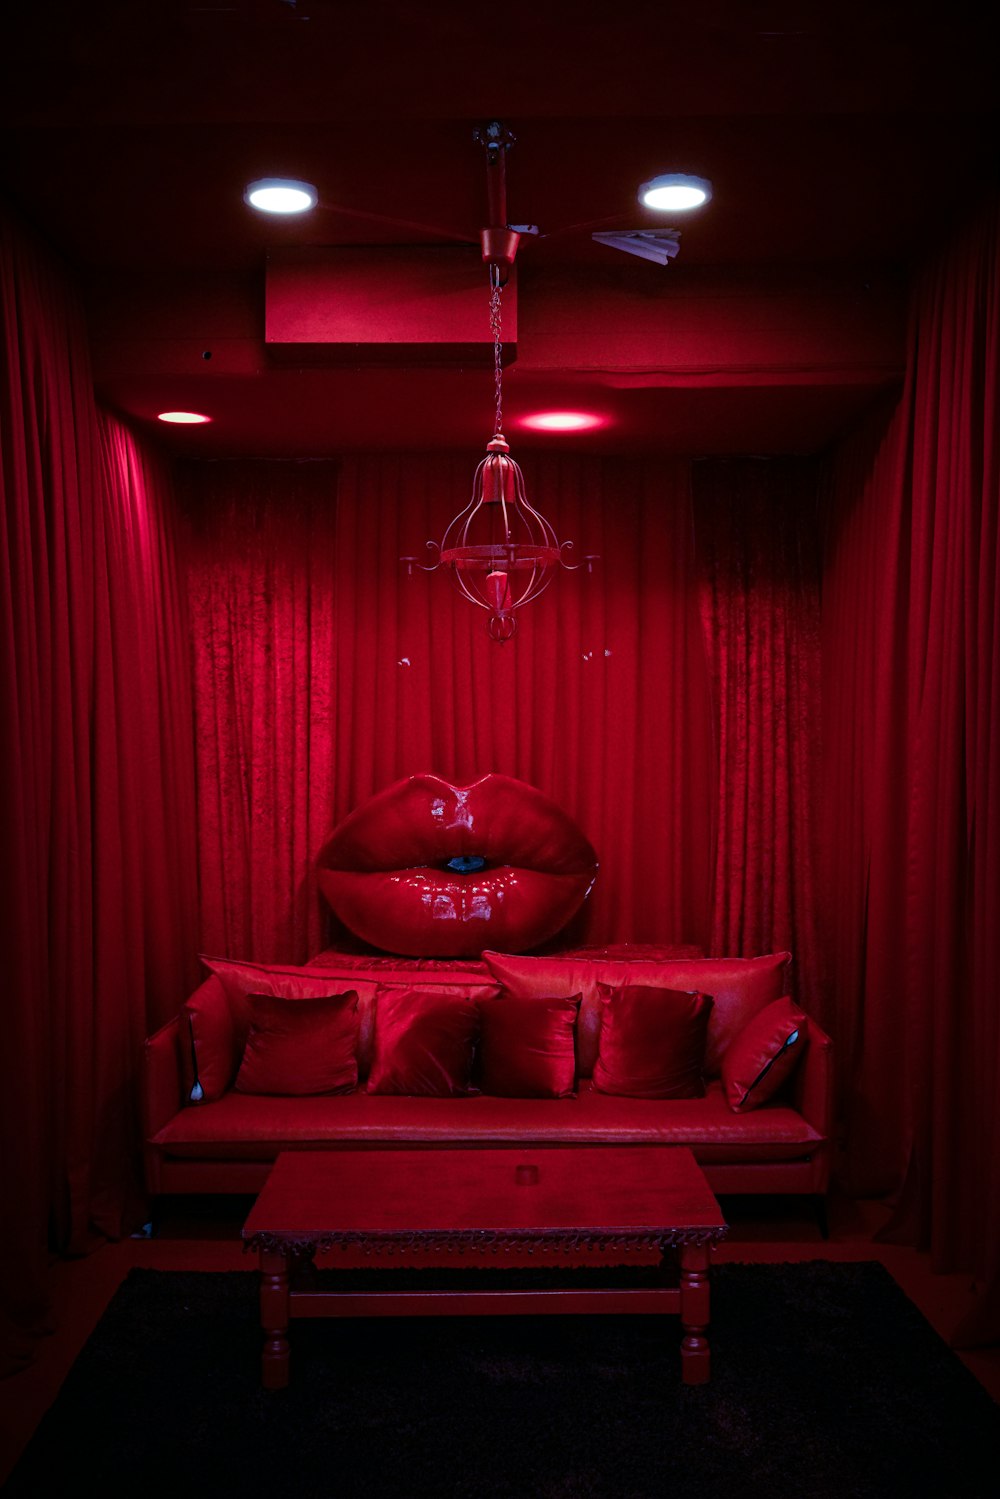 Bạn đang tìm kiếm một hình ảnh phòng đỏ độc đáo để trang trí thiết kế của mình? Unsplash cung cấp cho bạn ngay giải pháp. Hồi hộp chờ đón trải nghiệm hình ảnh nghệ thuật đầy màu sắc và ấn tượng này.